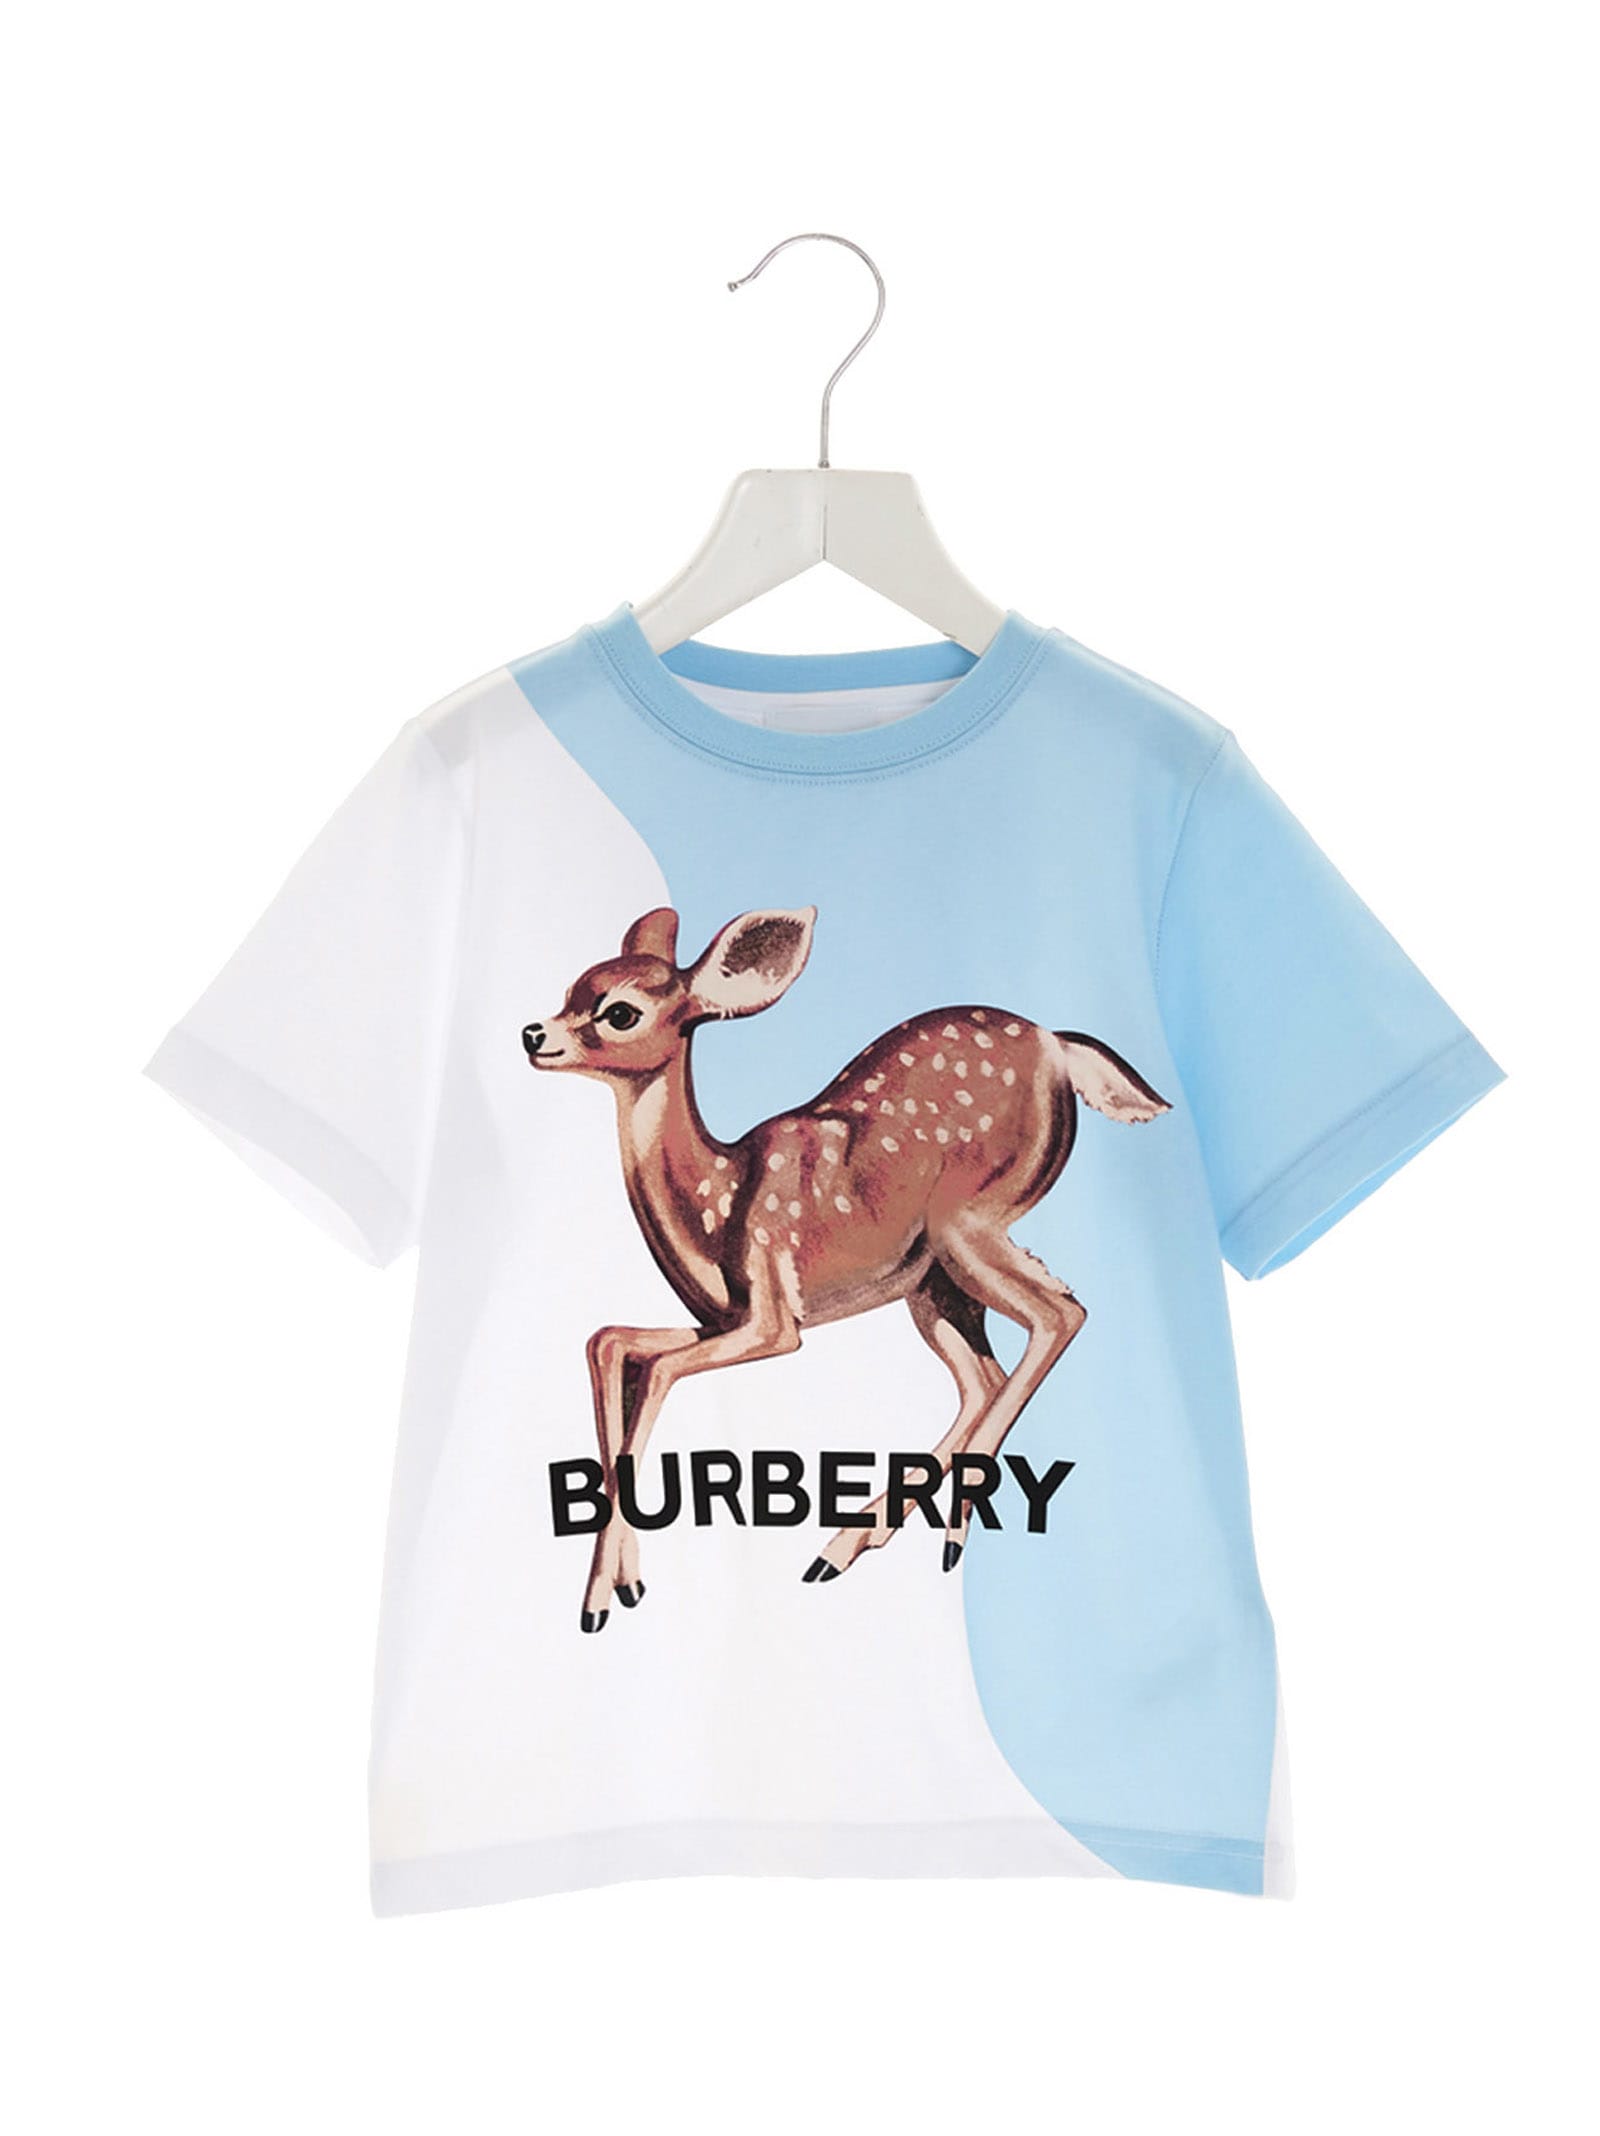 Burberry deer T-shirt